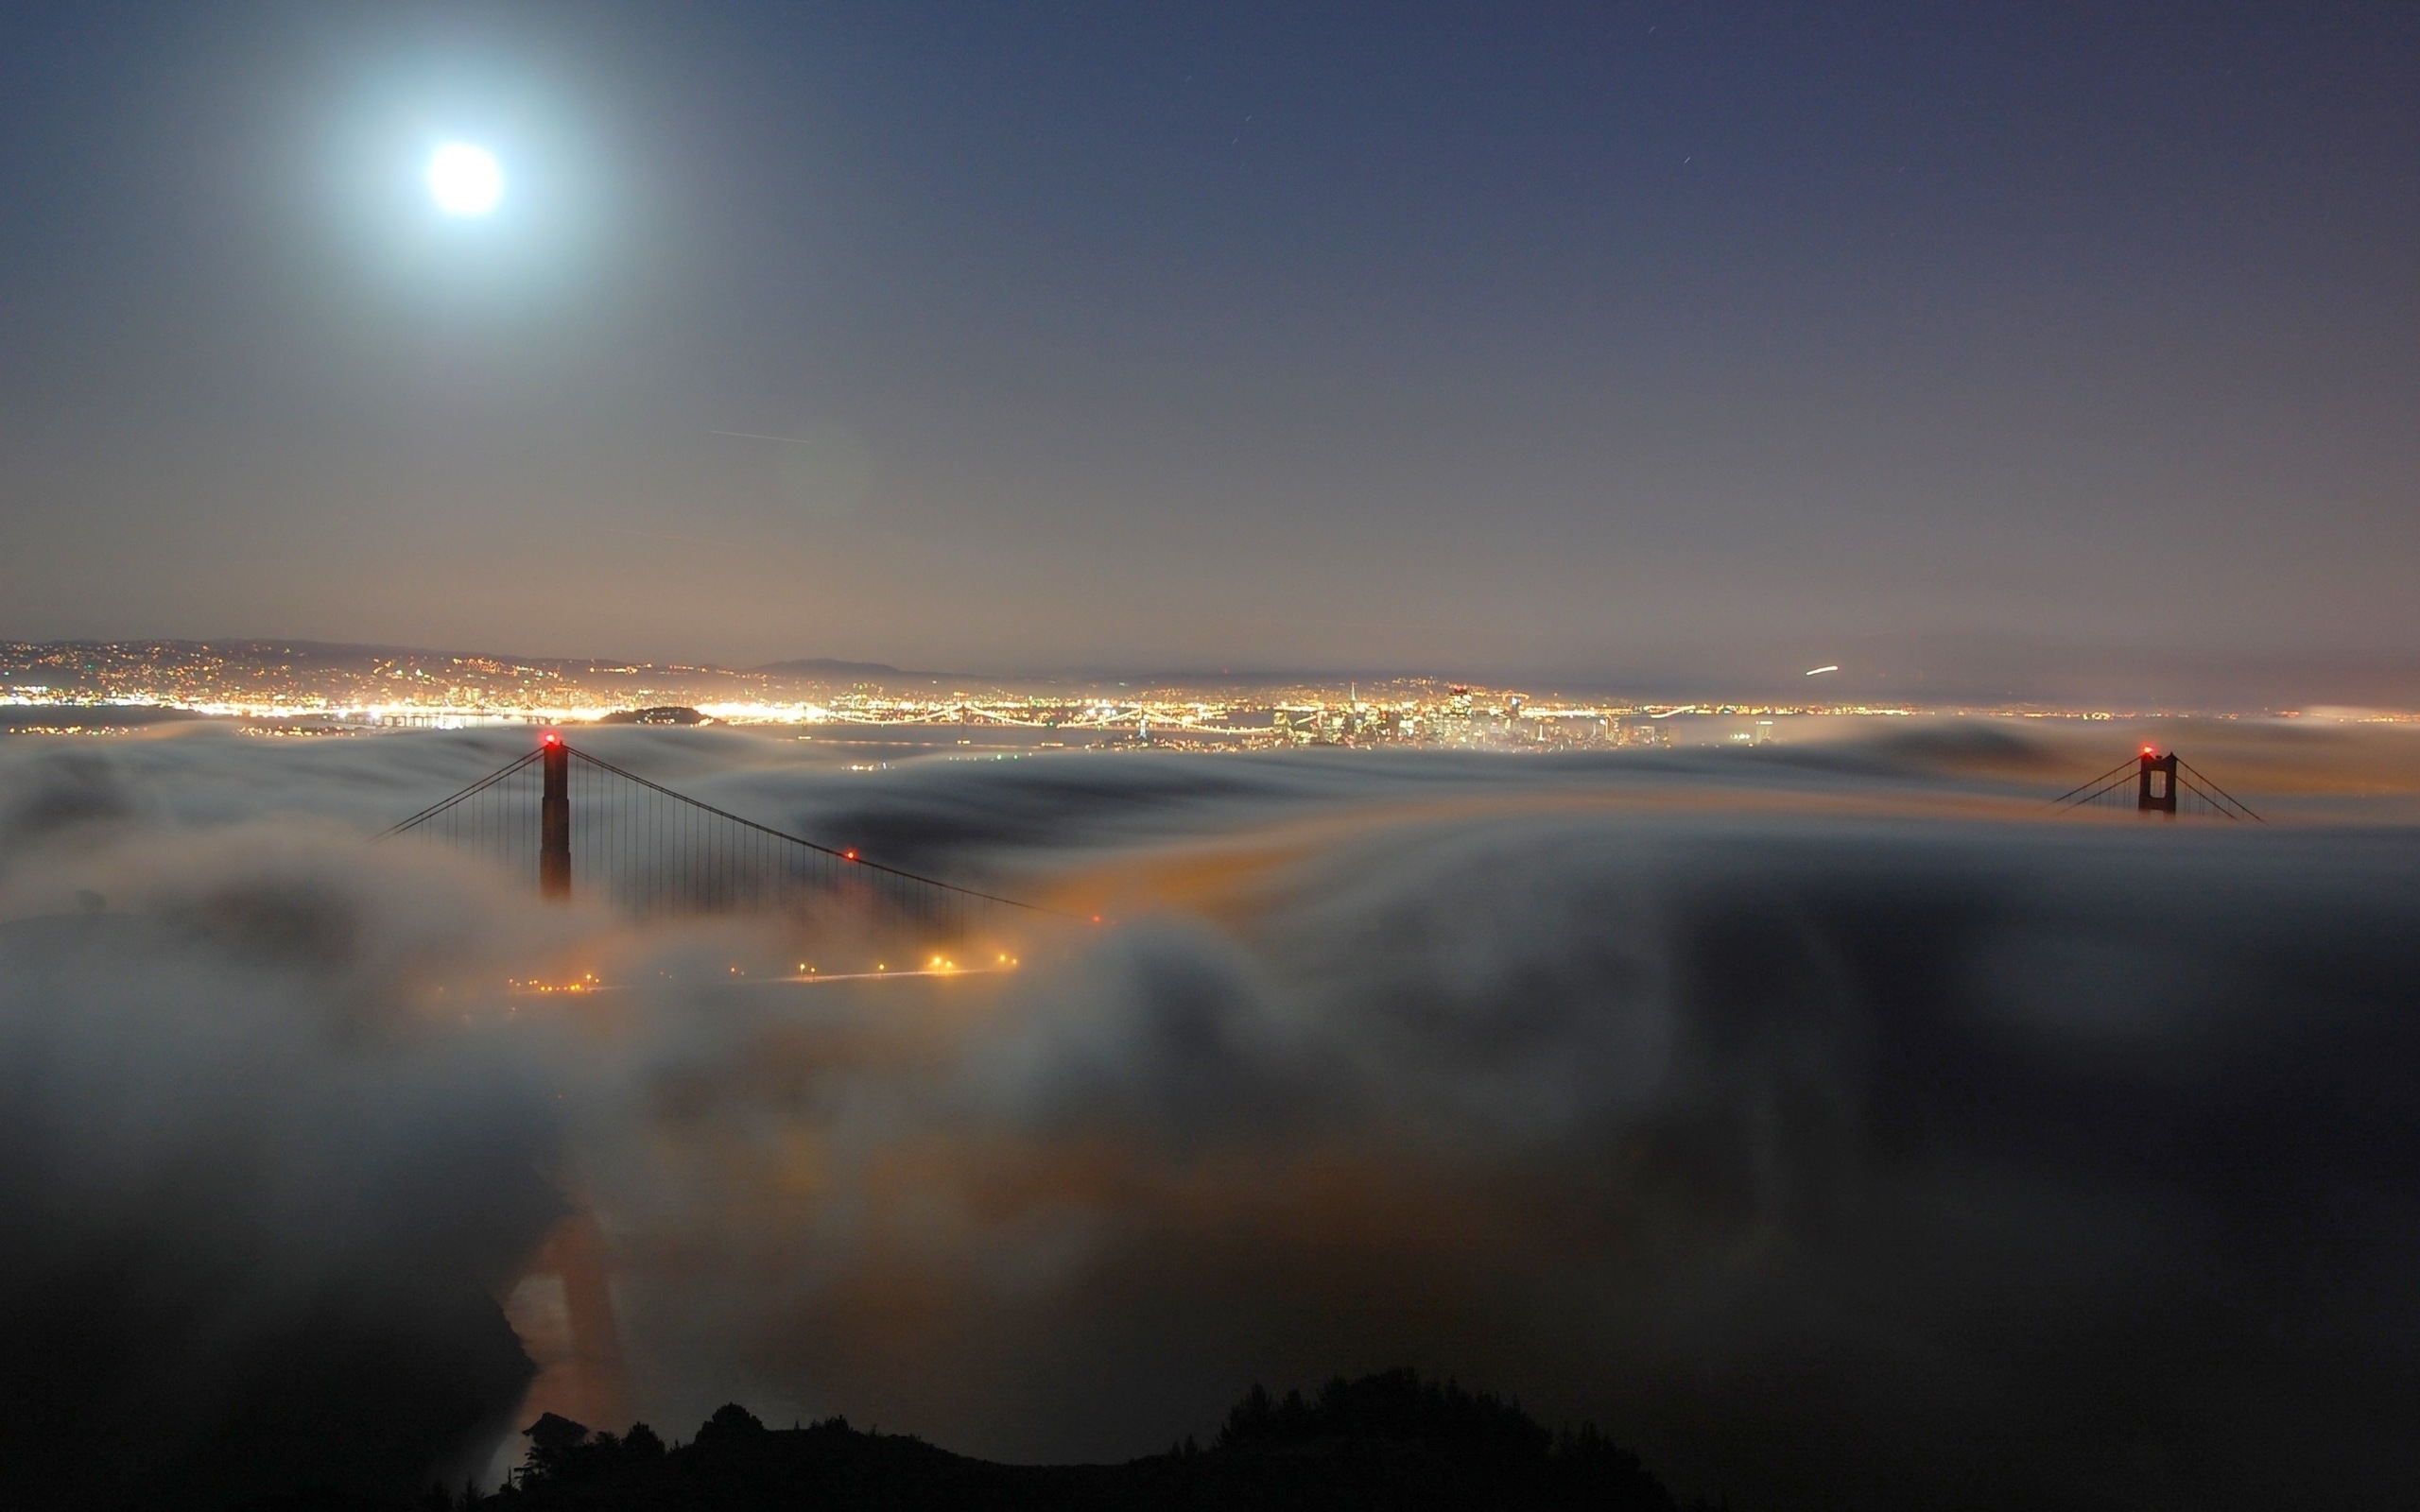 3d обои Cан-франциско, золотые ворота / San Francisco, Golden gate, bridge, ночной вид на мост под облаками  мосты # 56944